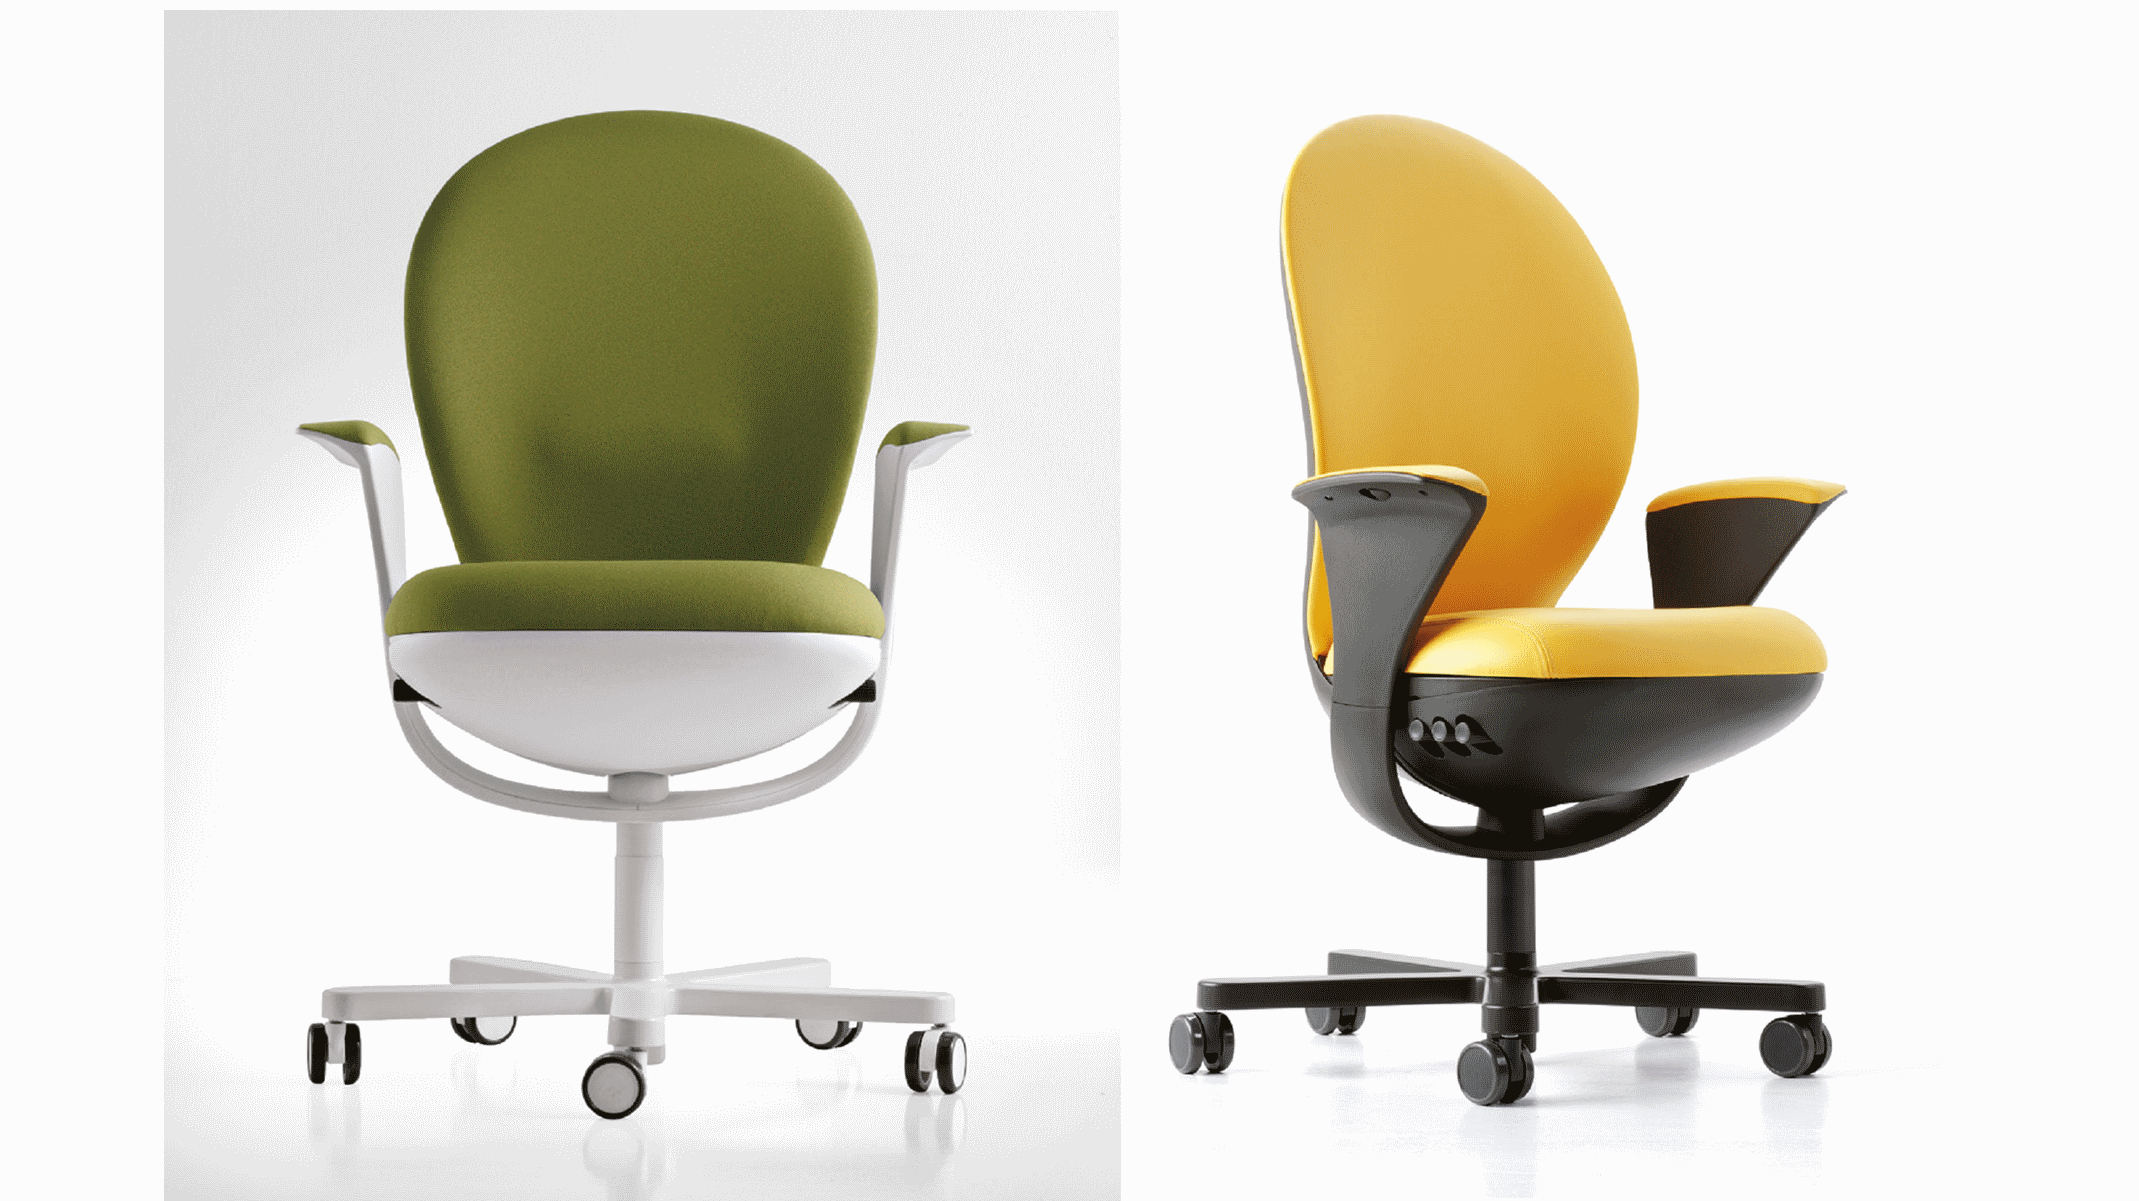 seduta direzionale luxy serie bea ergonomica girevole ufficio braccioli schienale verde gialla